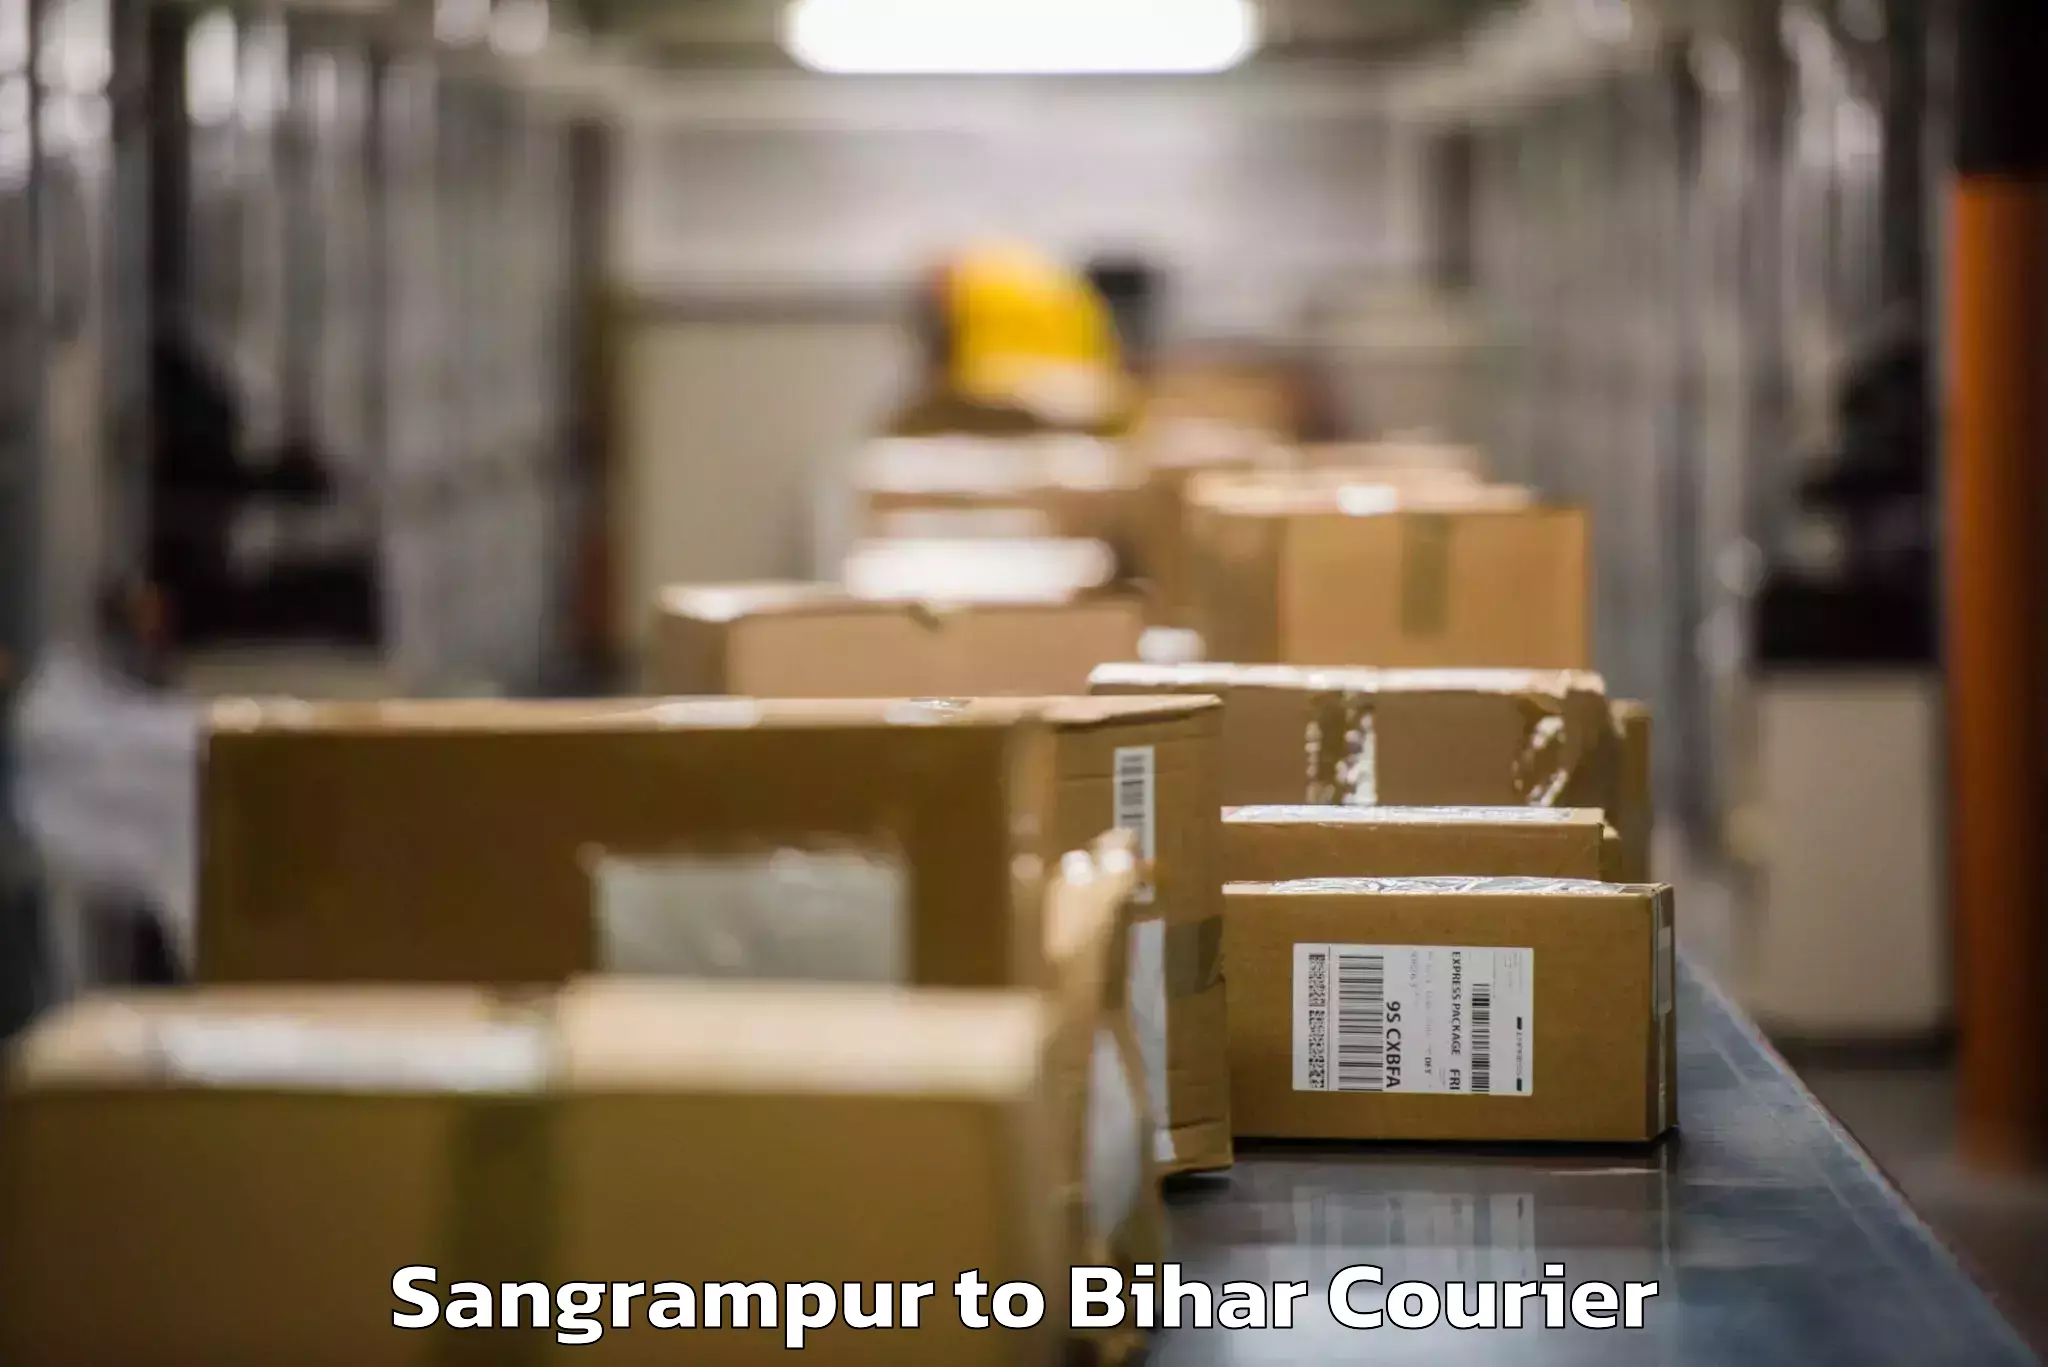 Baggage transport technology Sangrampur to Brahmapur